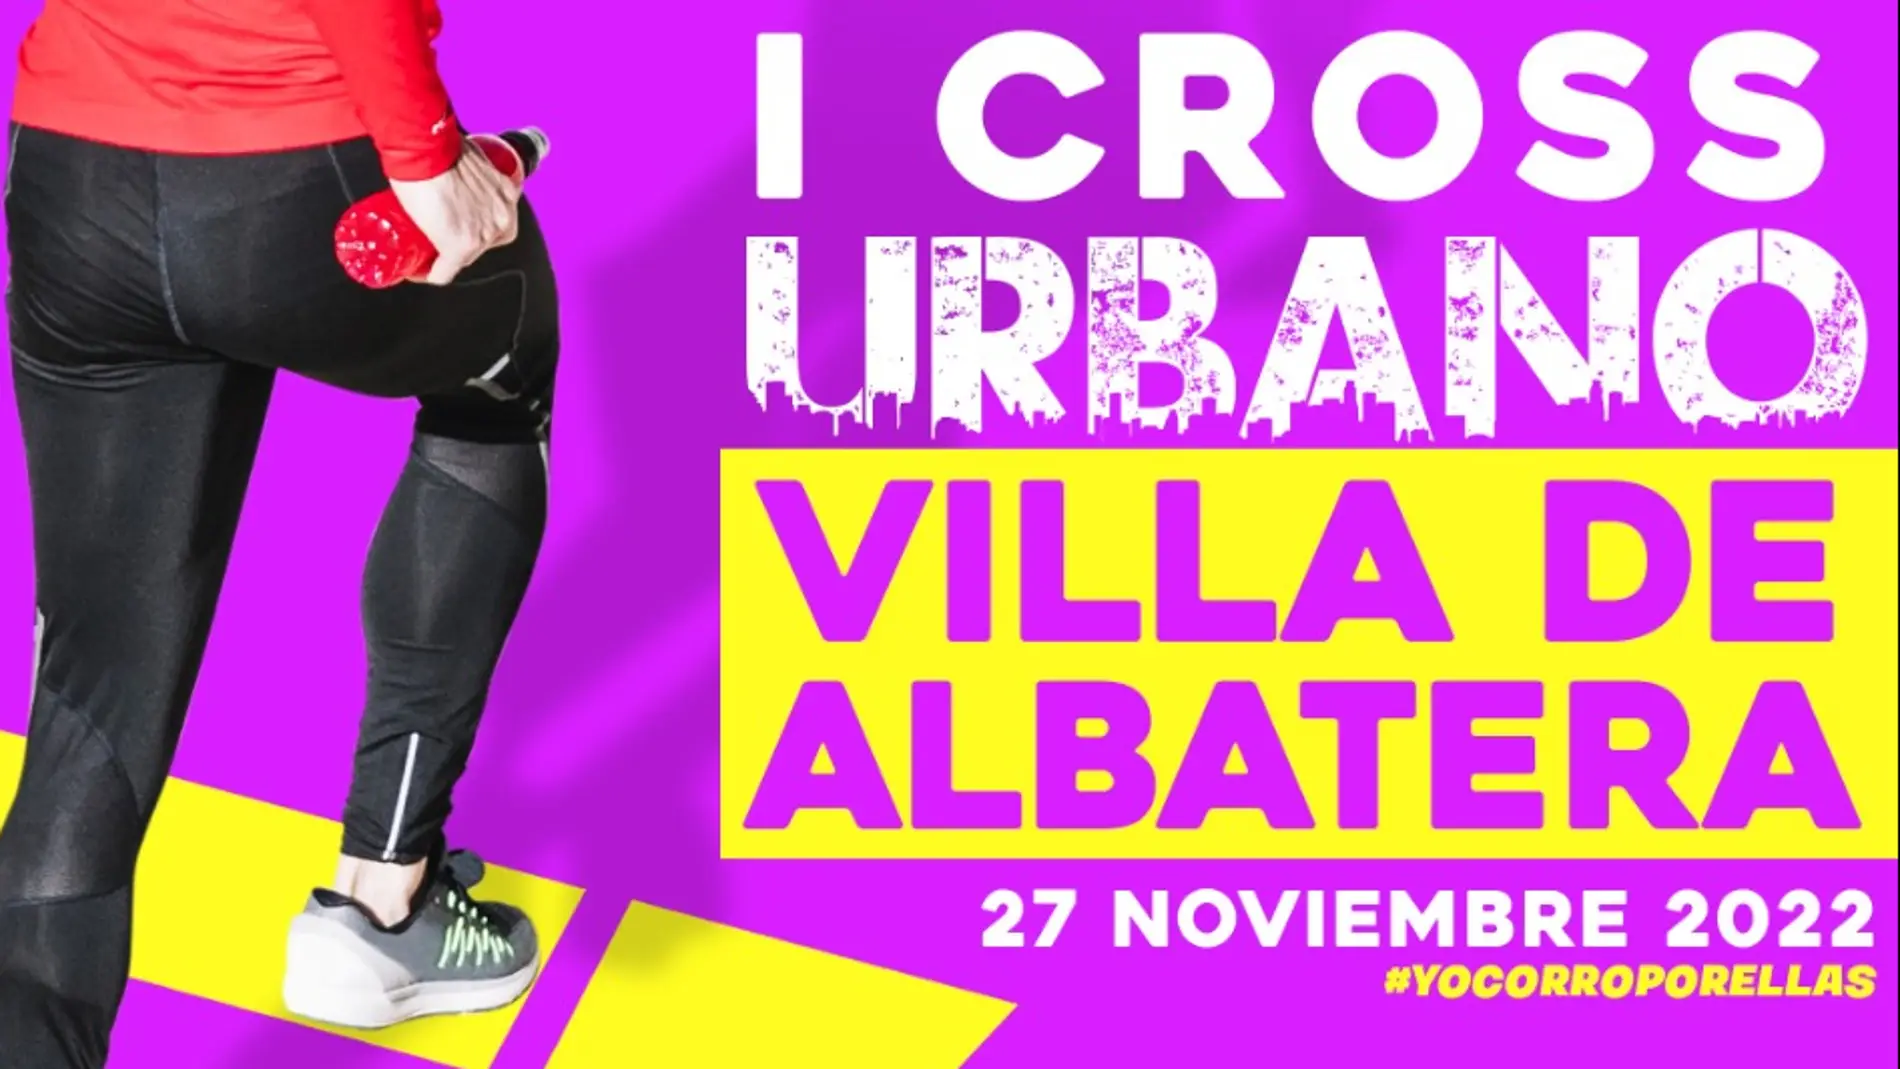 Deportes presenta el I Cross Urbano Villa de Albatera, fecha 27 de noviembre 